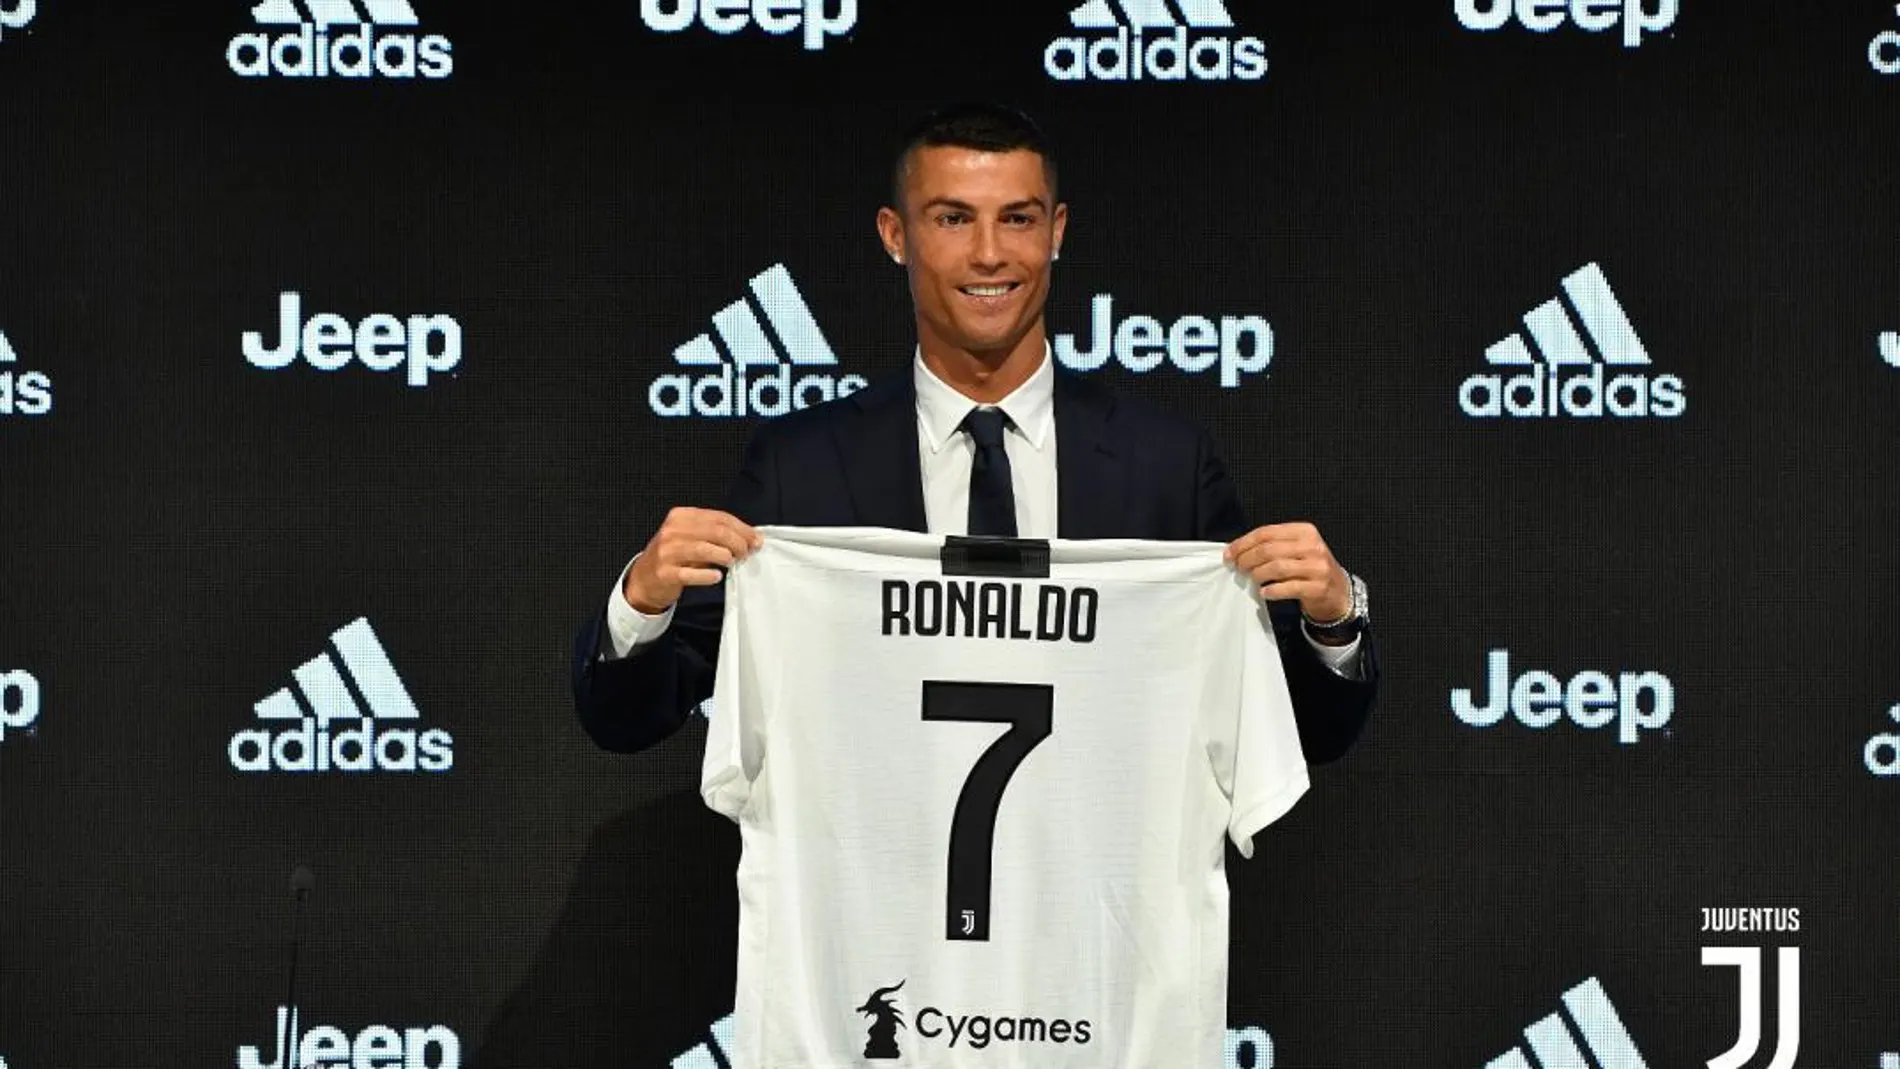 Ronaldo posa con la camiseta de la Juventus con el número 7 tras la rueda de prensa / Twitter